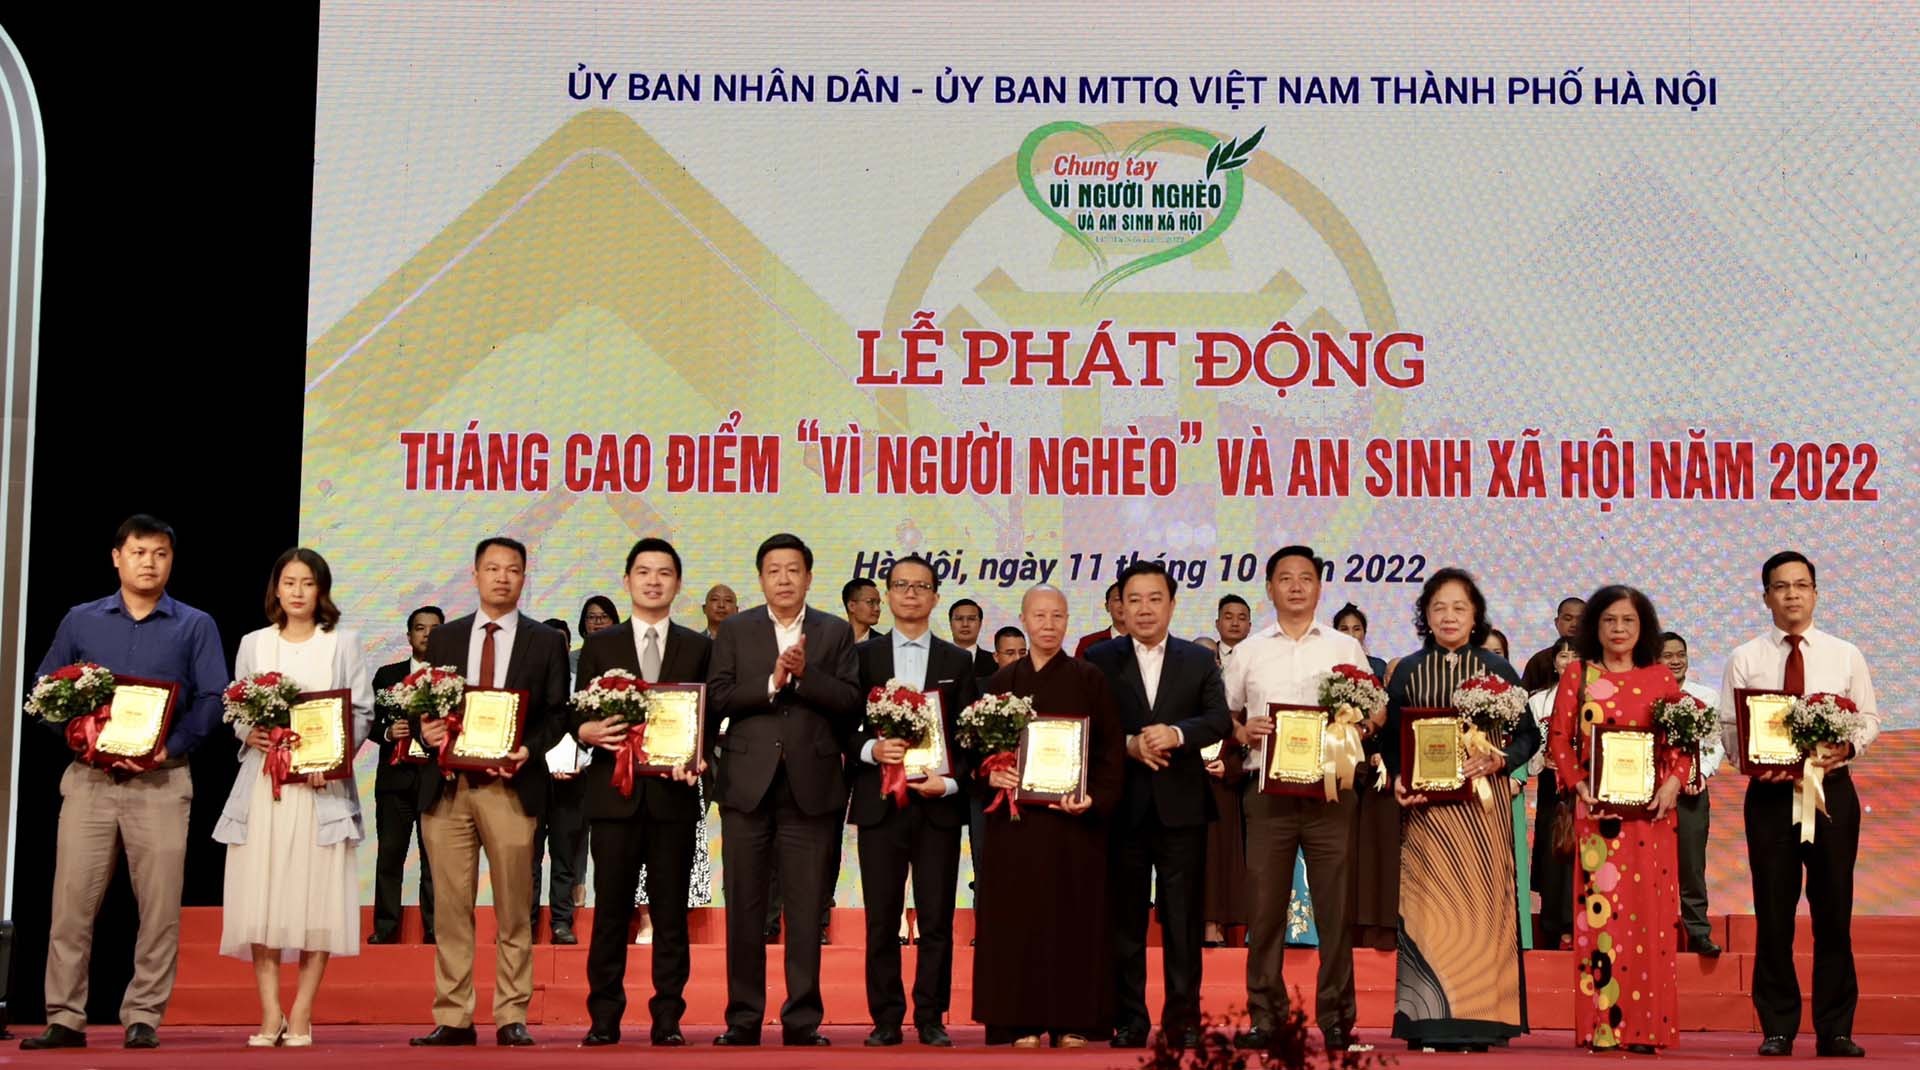 Ông Đỗ Vinh Quang, Phó Chủ tịch HĐQT Tập đoàn T&T Group (thứ tư từ trái sang) được vinh danh bởi những đóng góp tích cực trong hoạt động an sinh xã hội của Thủ đô